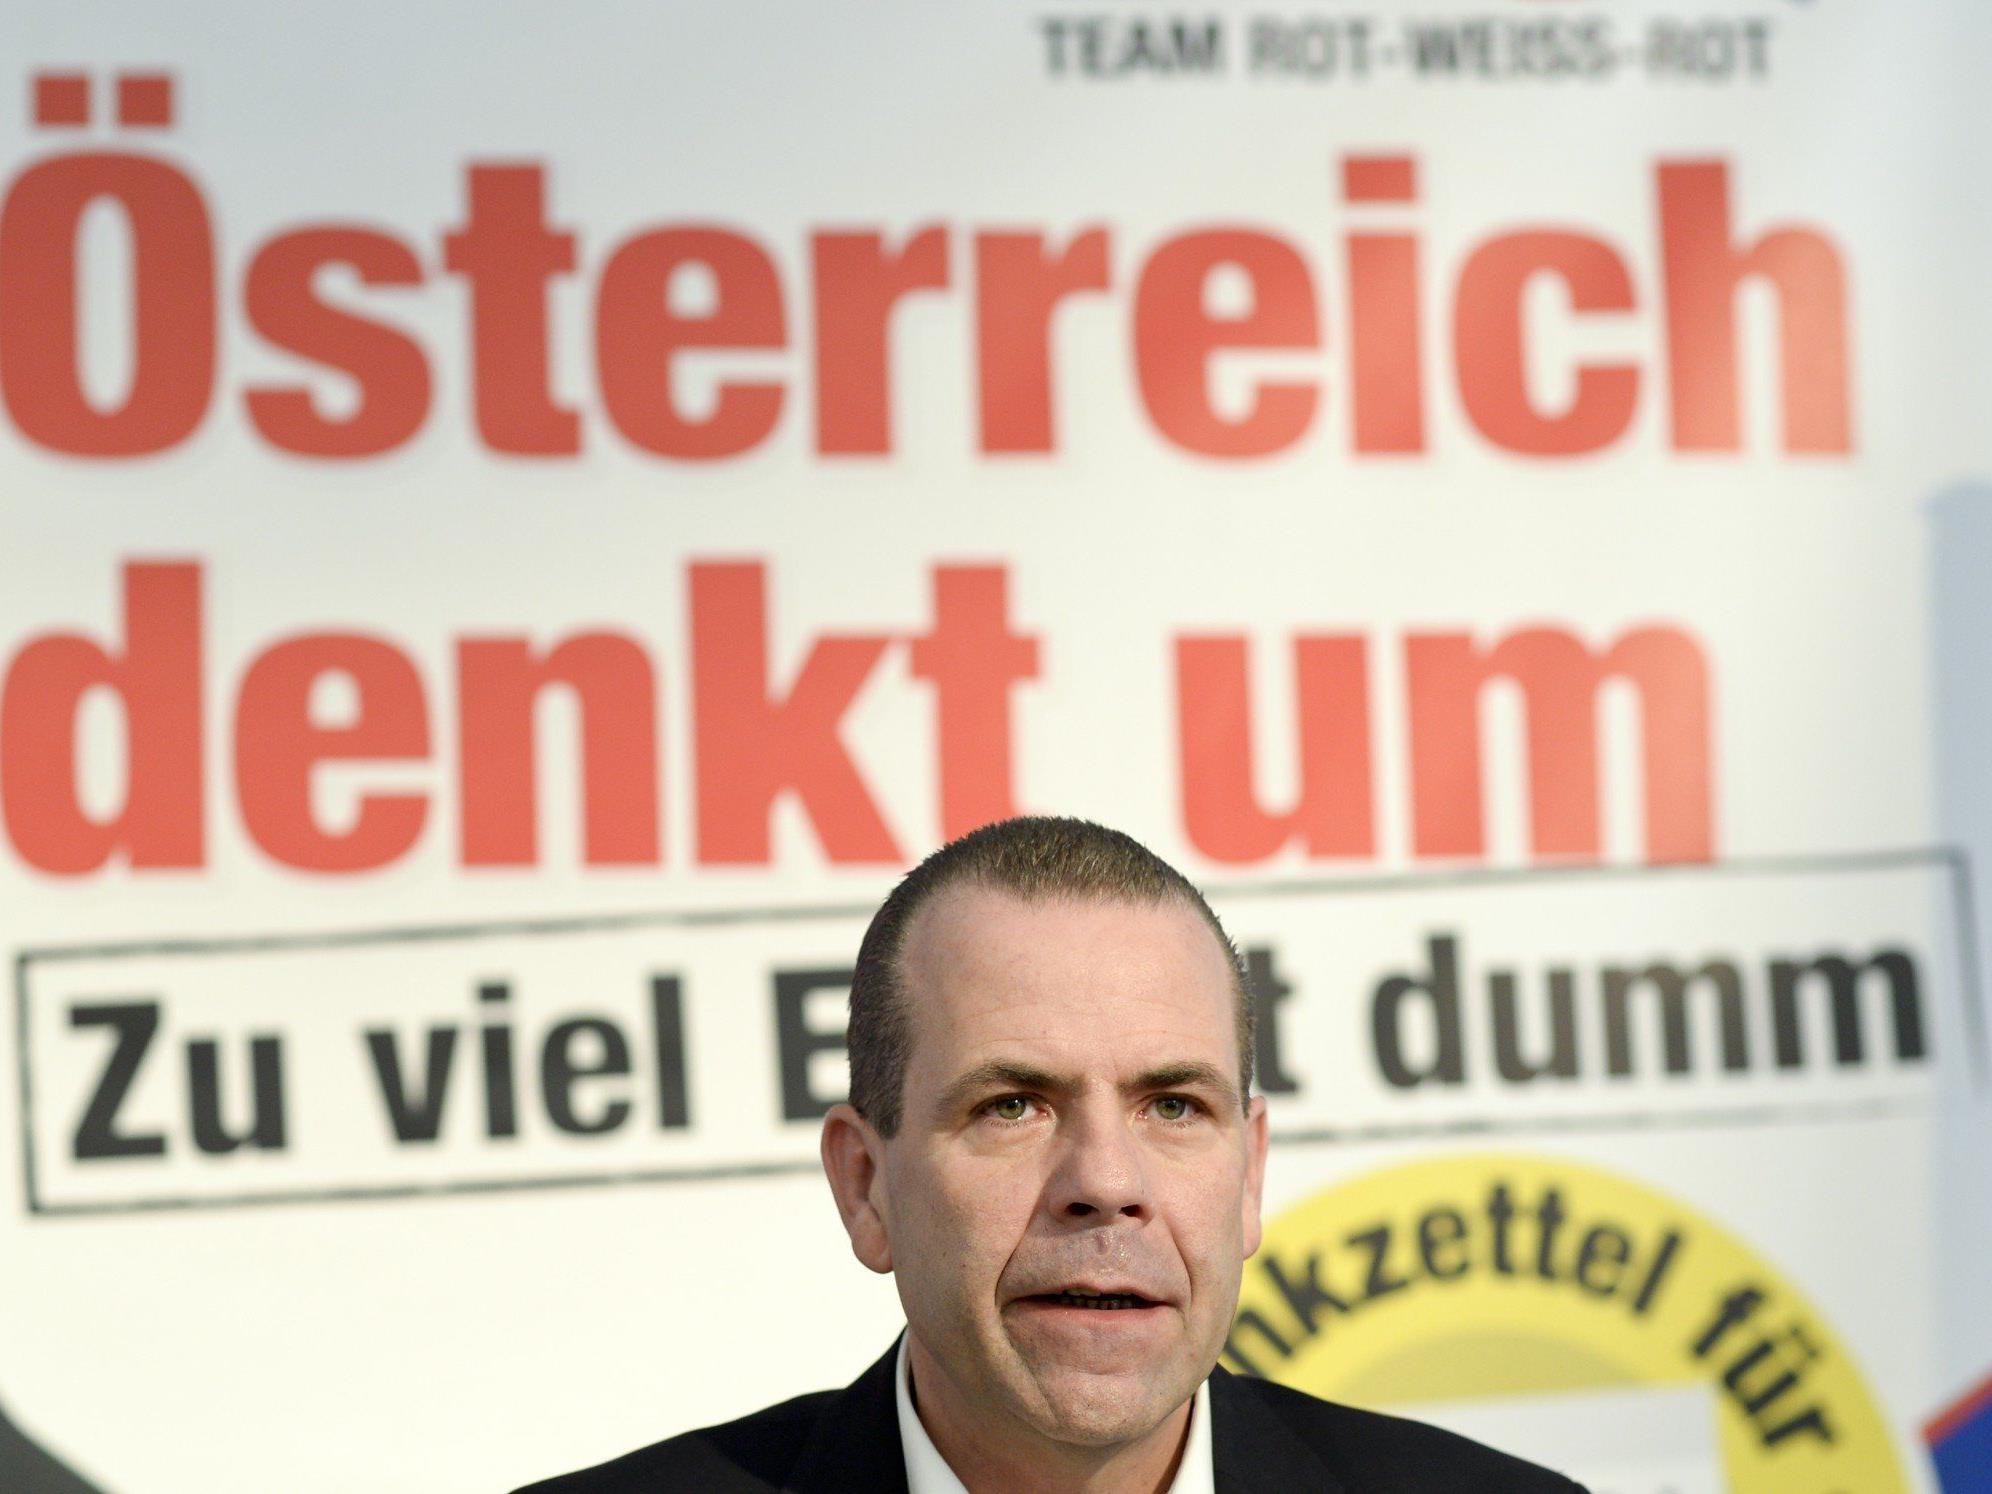 Nach Mölzer-Affäre: Hat die FPÖ mit neuem EU-Spitzenkandidaten noch Chancen?